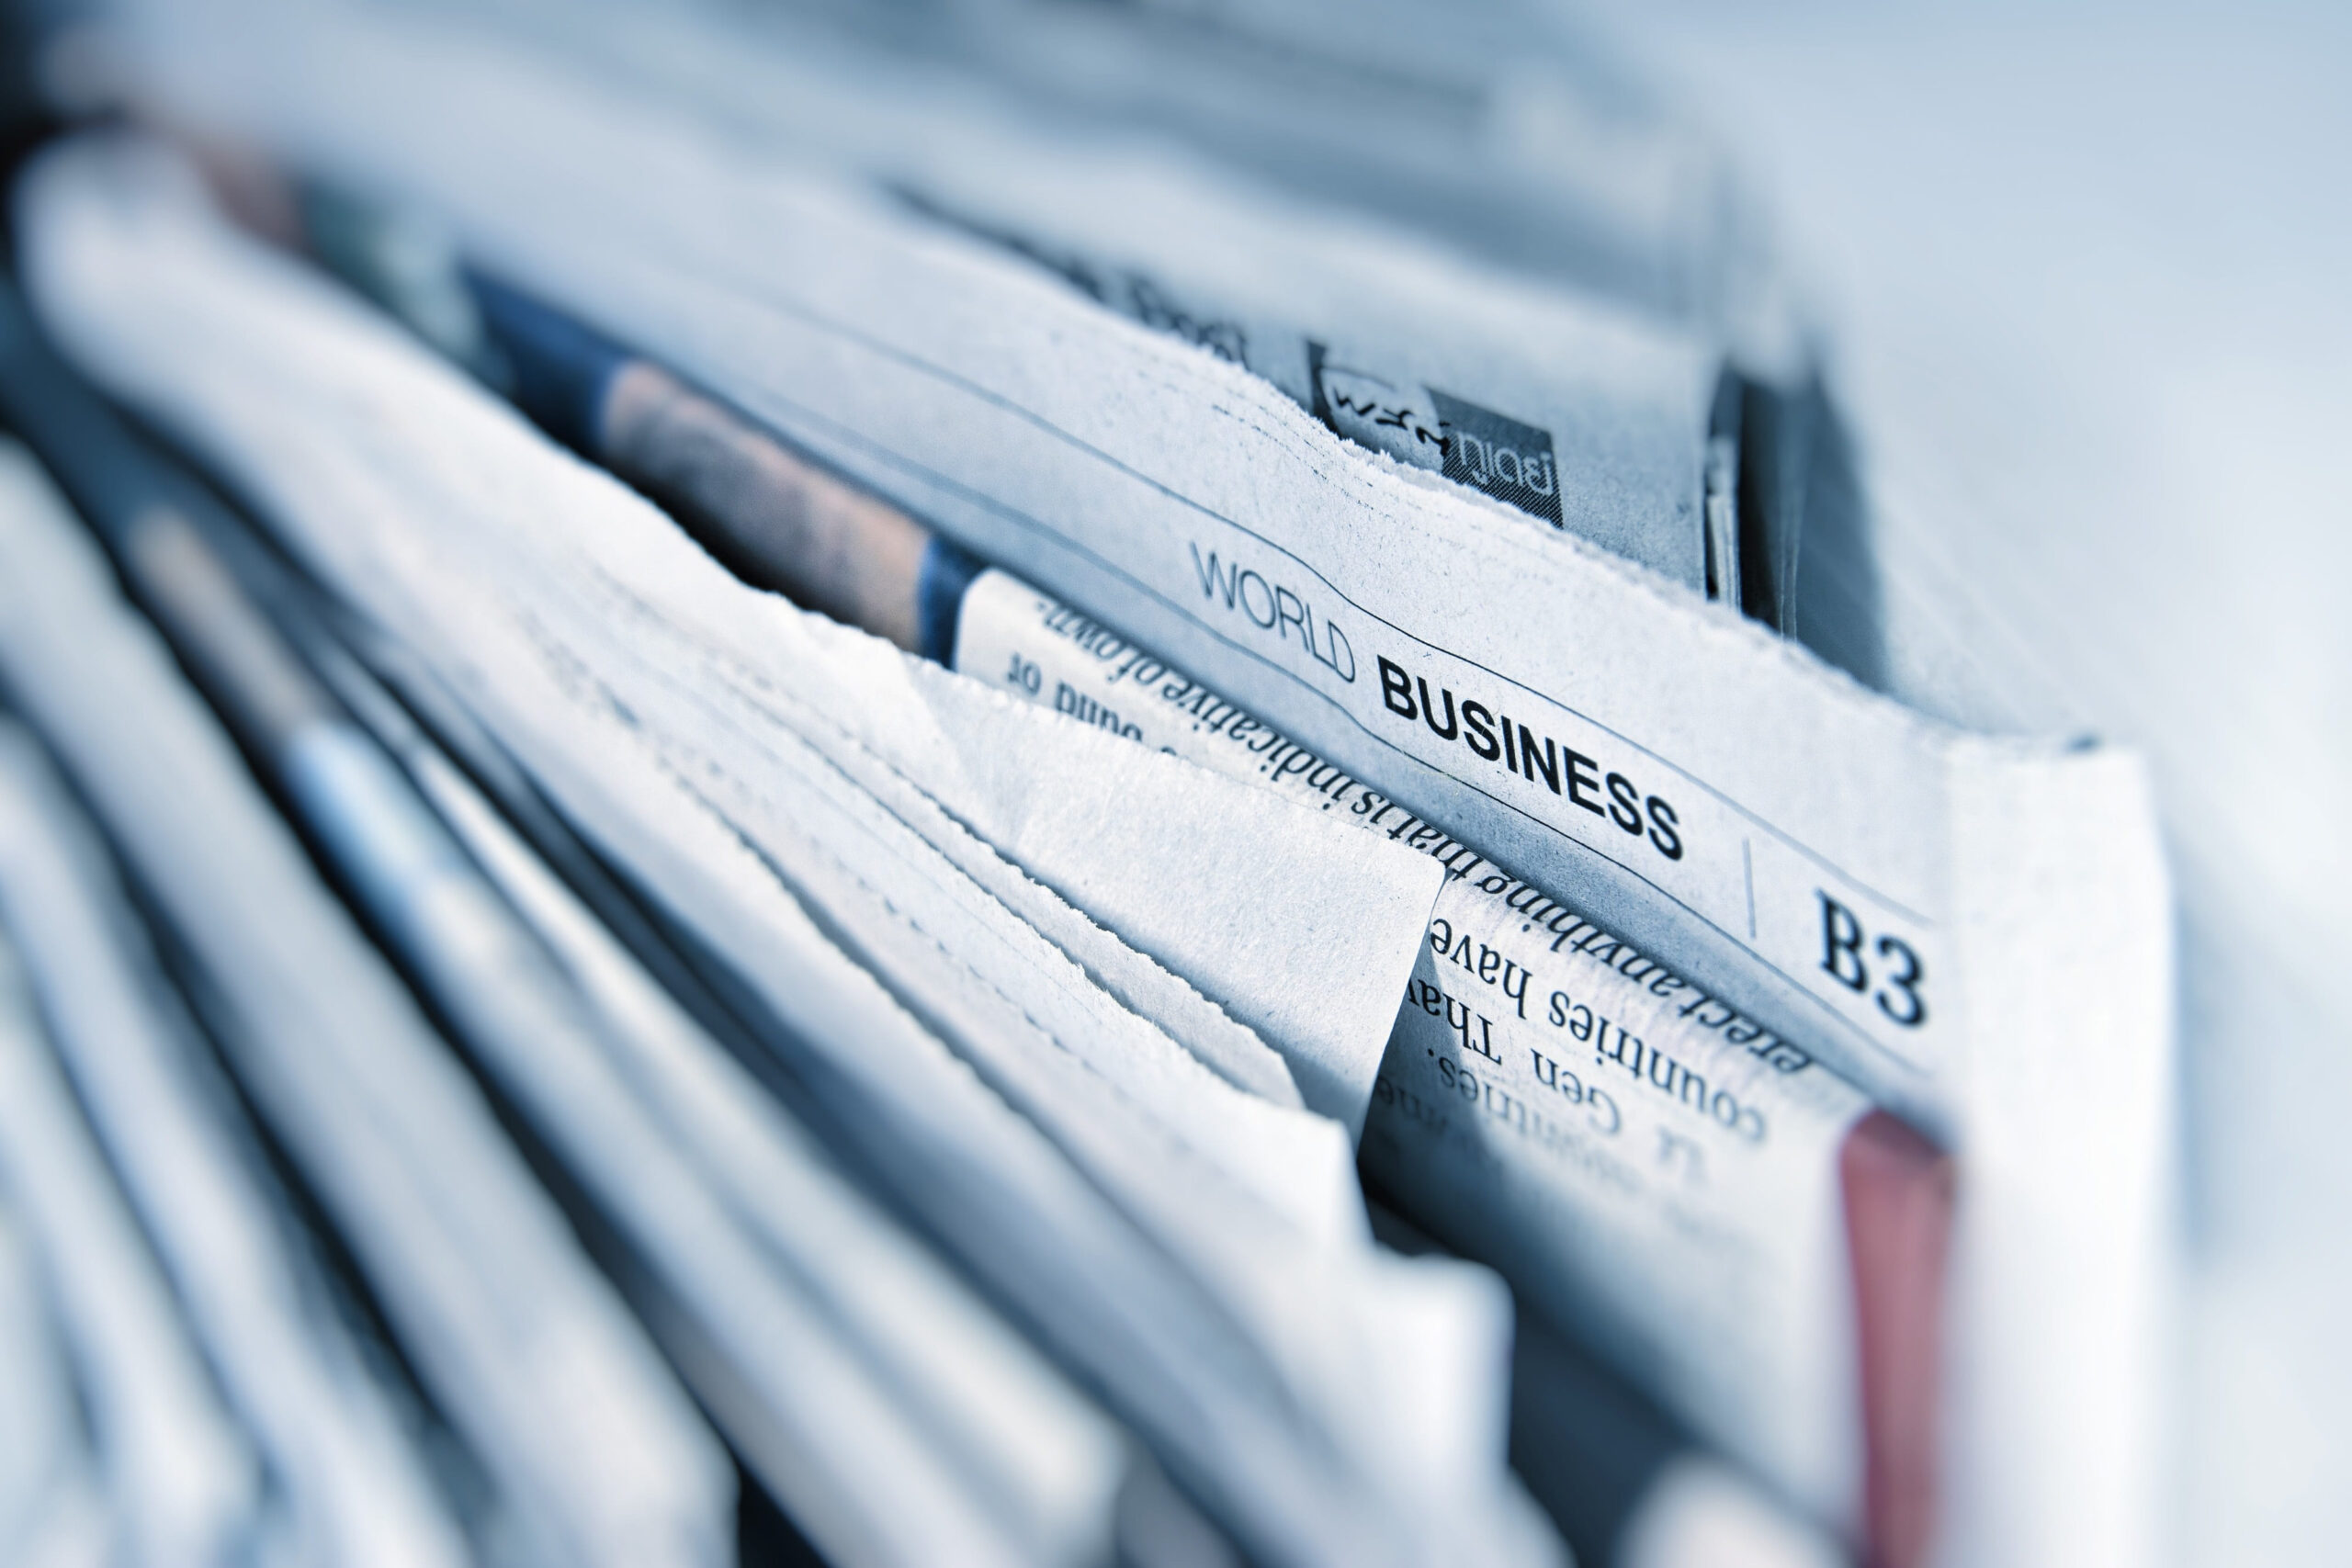 Wallpaper Shallow Focus On World Business B3 News, Newspaper, Textures